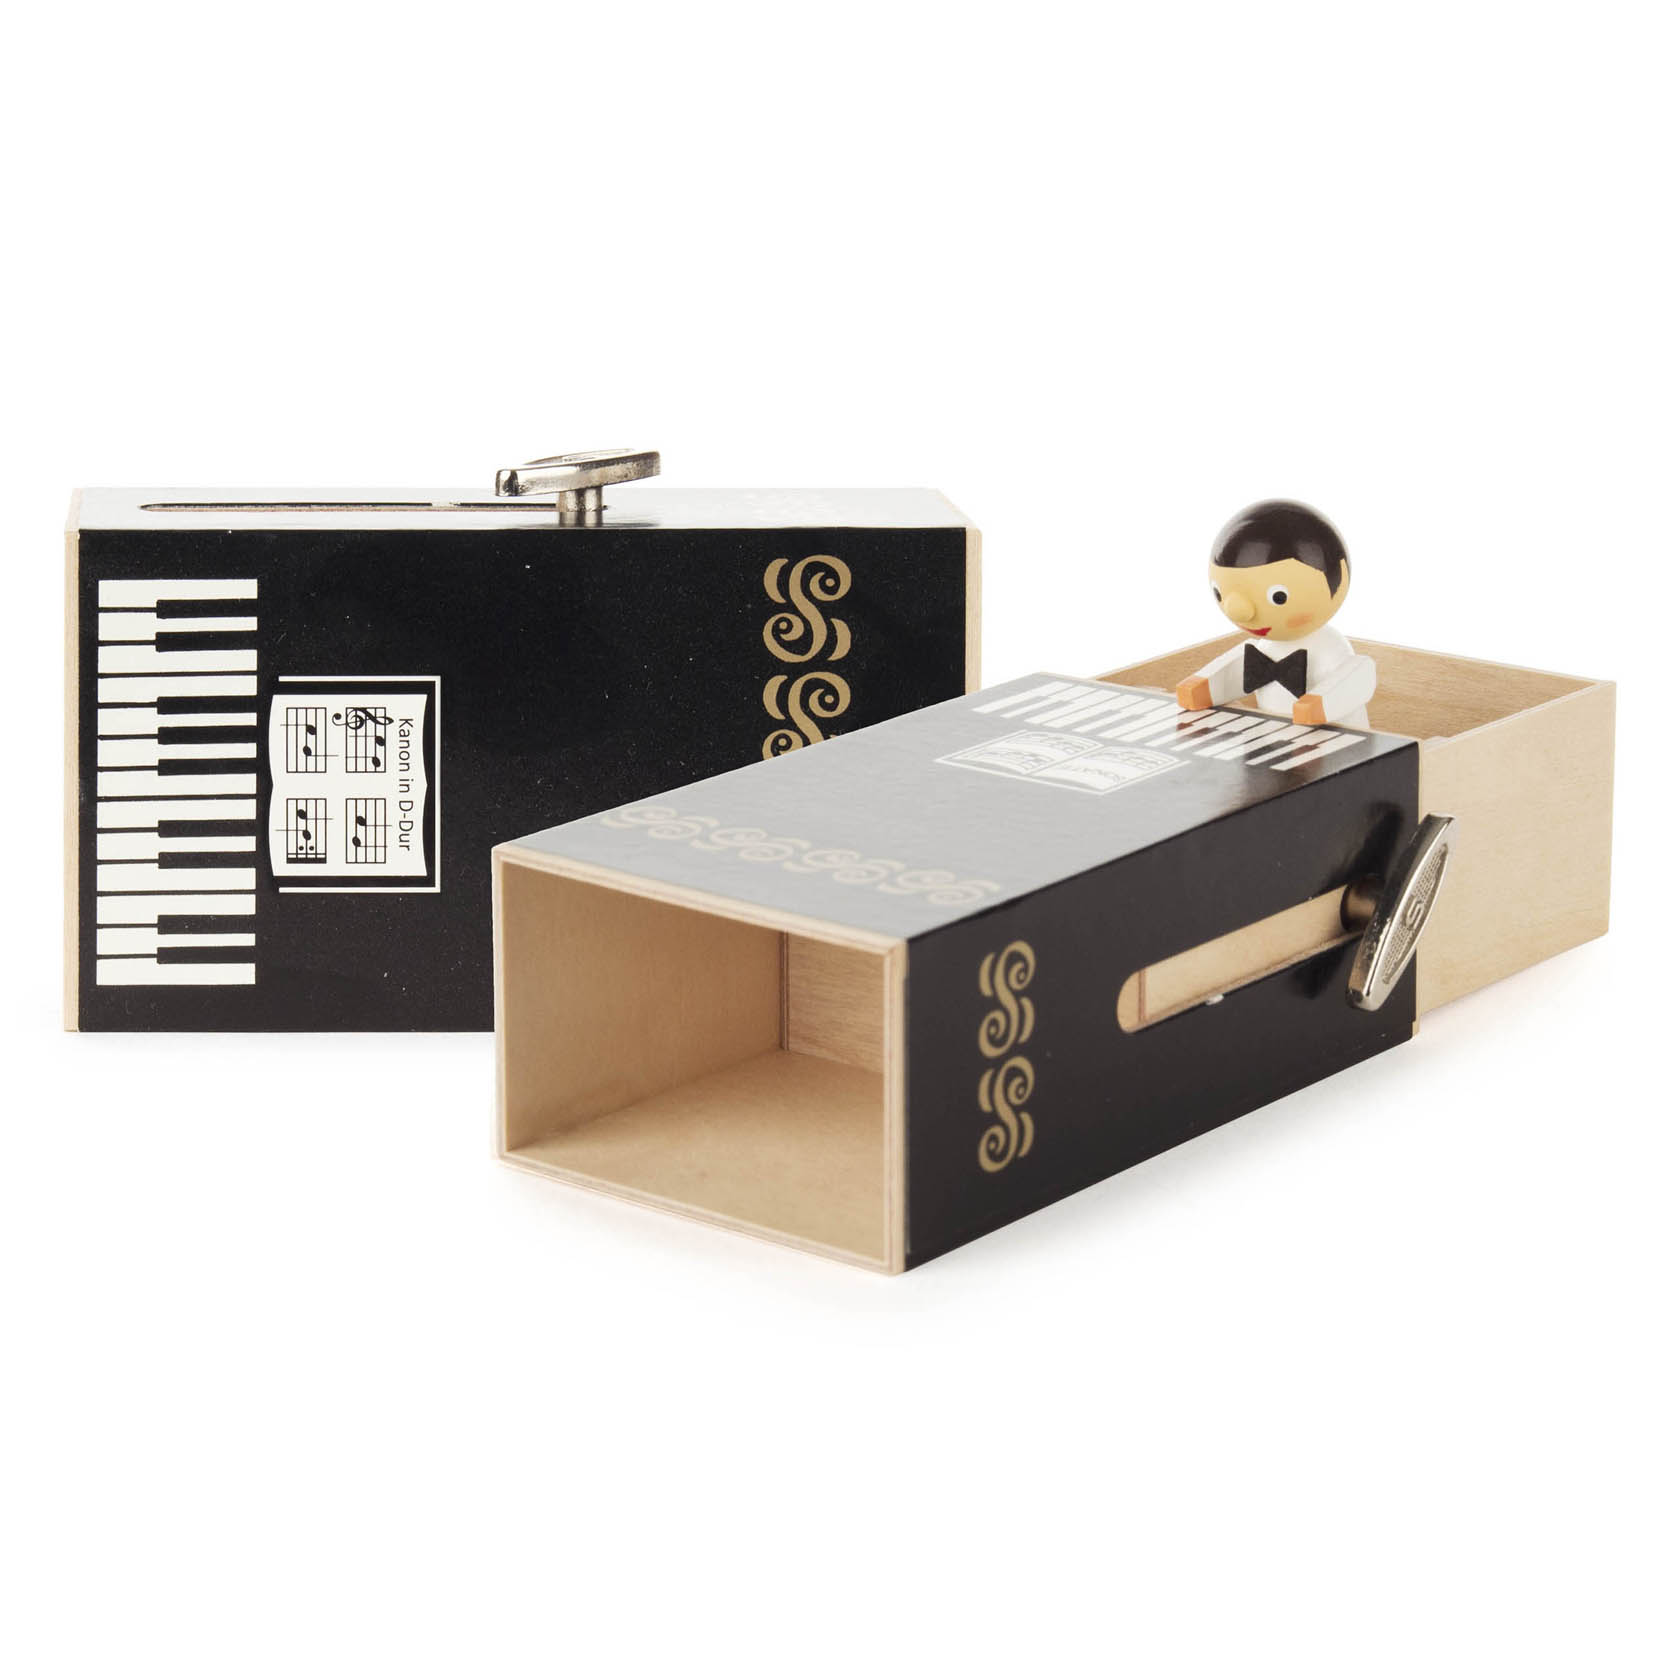 Schiebebox "Piano-Box" mit Junge Melodie: Kanon in D-Dur im Dregeno Online Shop günstig kaufen